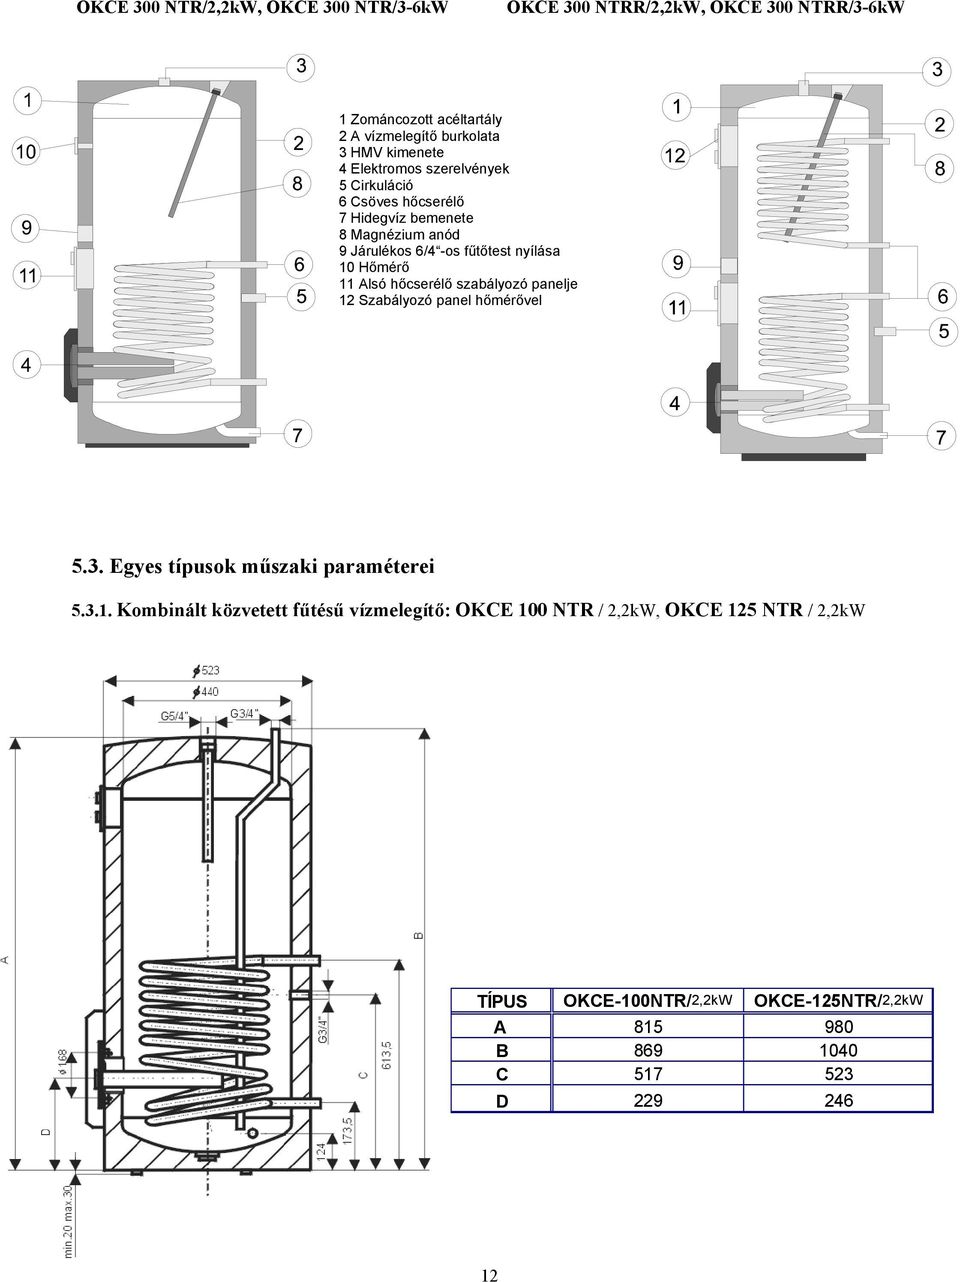 10 Hőmérő 11 Alsó hőcserélő szabályozó panelje 12 Szabályozó panel hőmérővel 5.3. Egyes típusok műszaki paraméterei 5.3.1. Kombinált közvetett